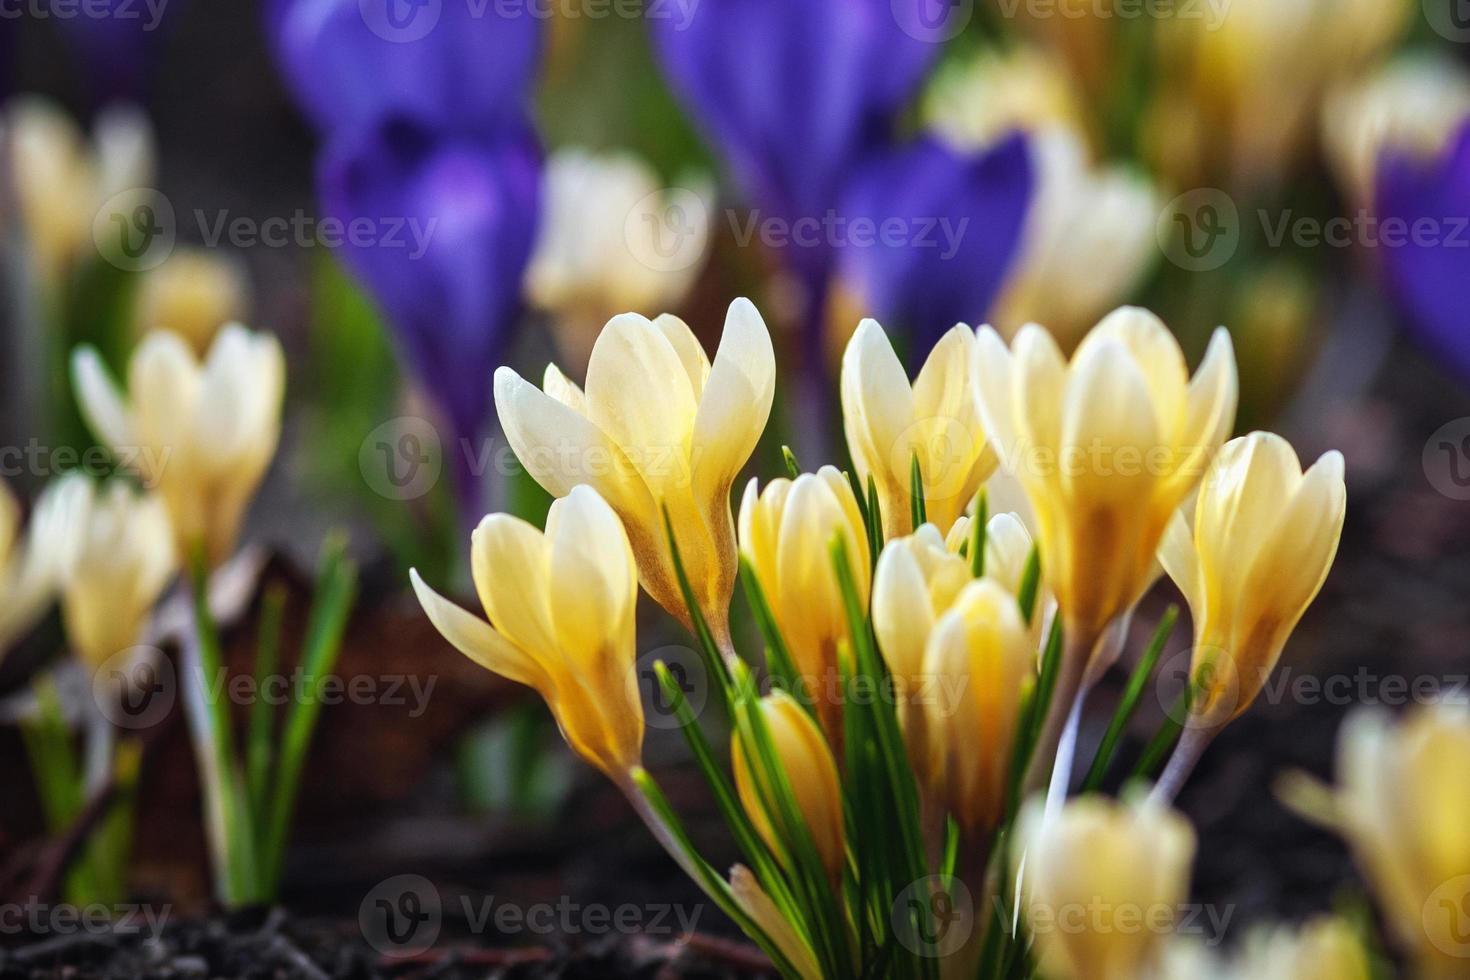 d'or crocus, crocus chrysanthème - Jaune et bleu crocus fleurs épanouissement dans de bonne heure printemps photo